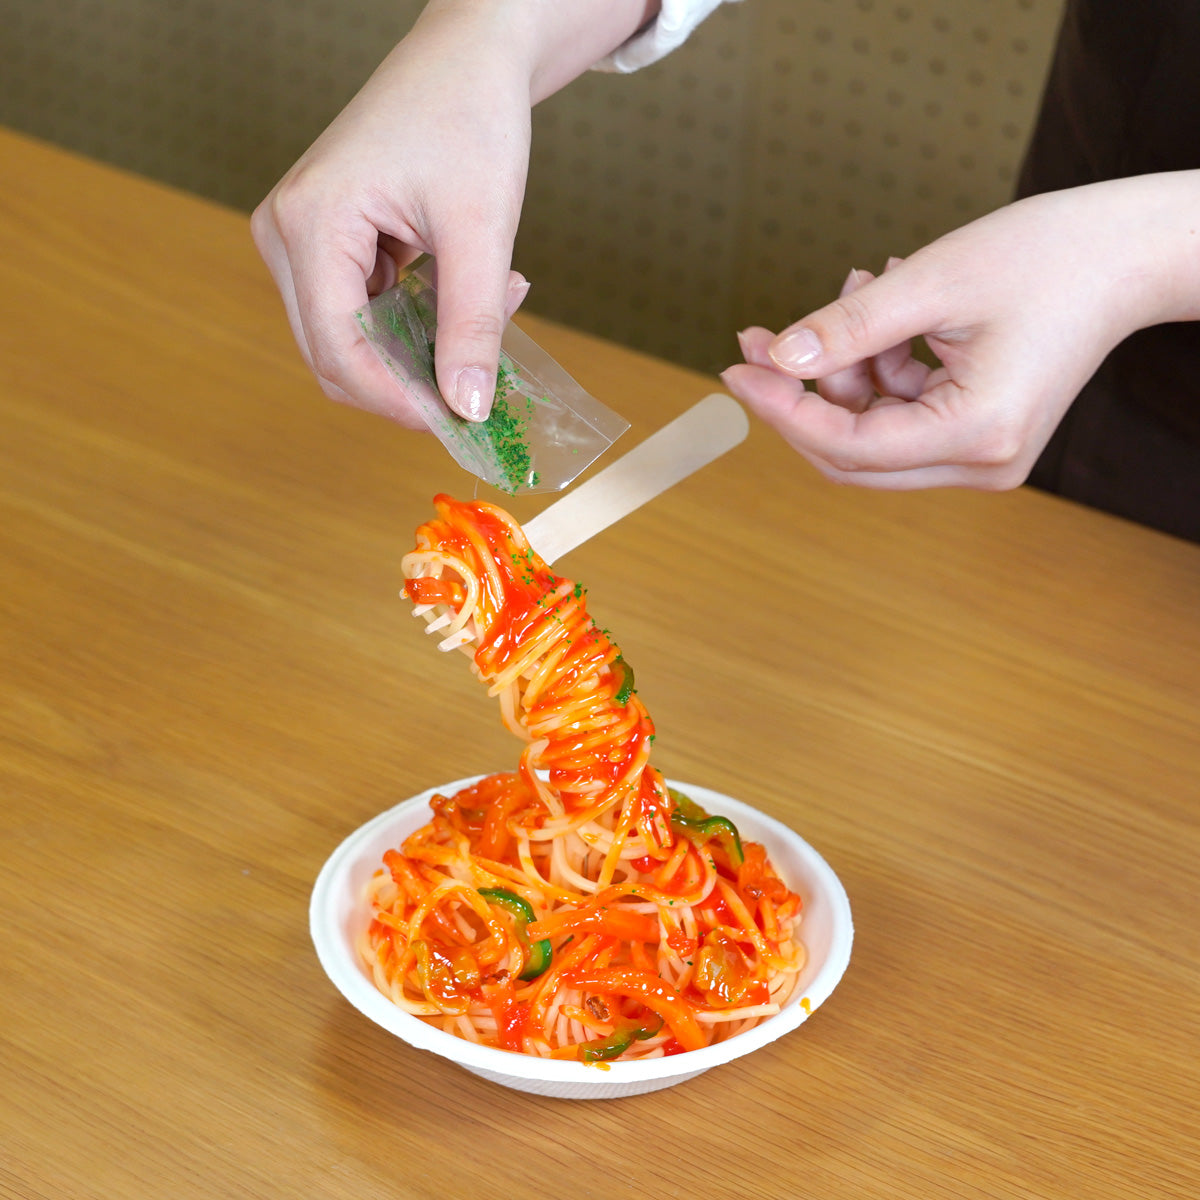 自分でつくる食品サンプルキット「さんぷるんvol.1 ナポリタン」の製作工程画像です。食品サンプルのパセリをトッッピングしています。